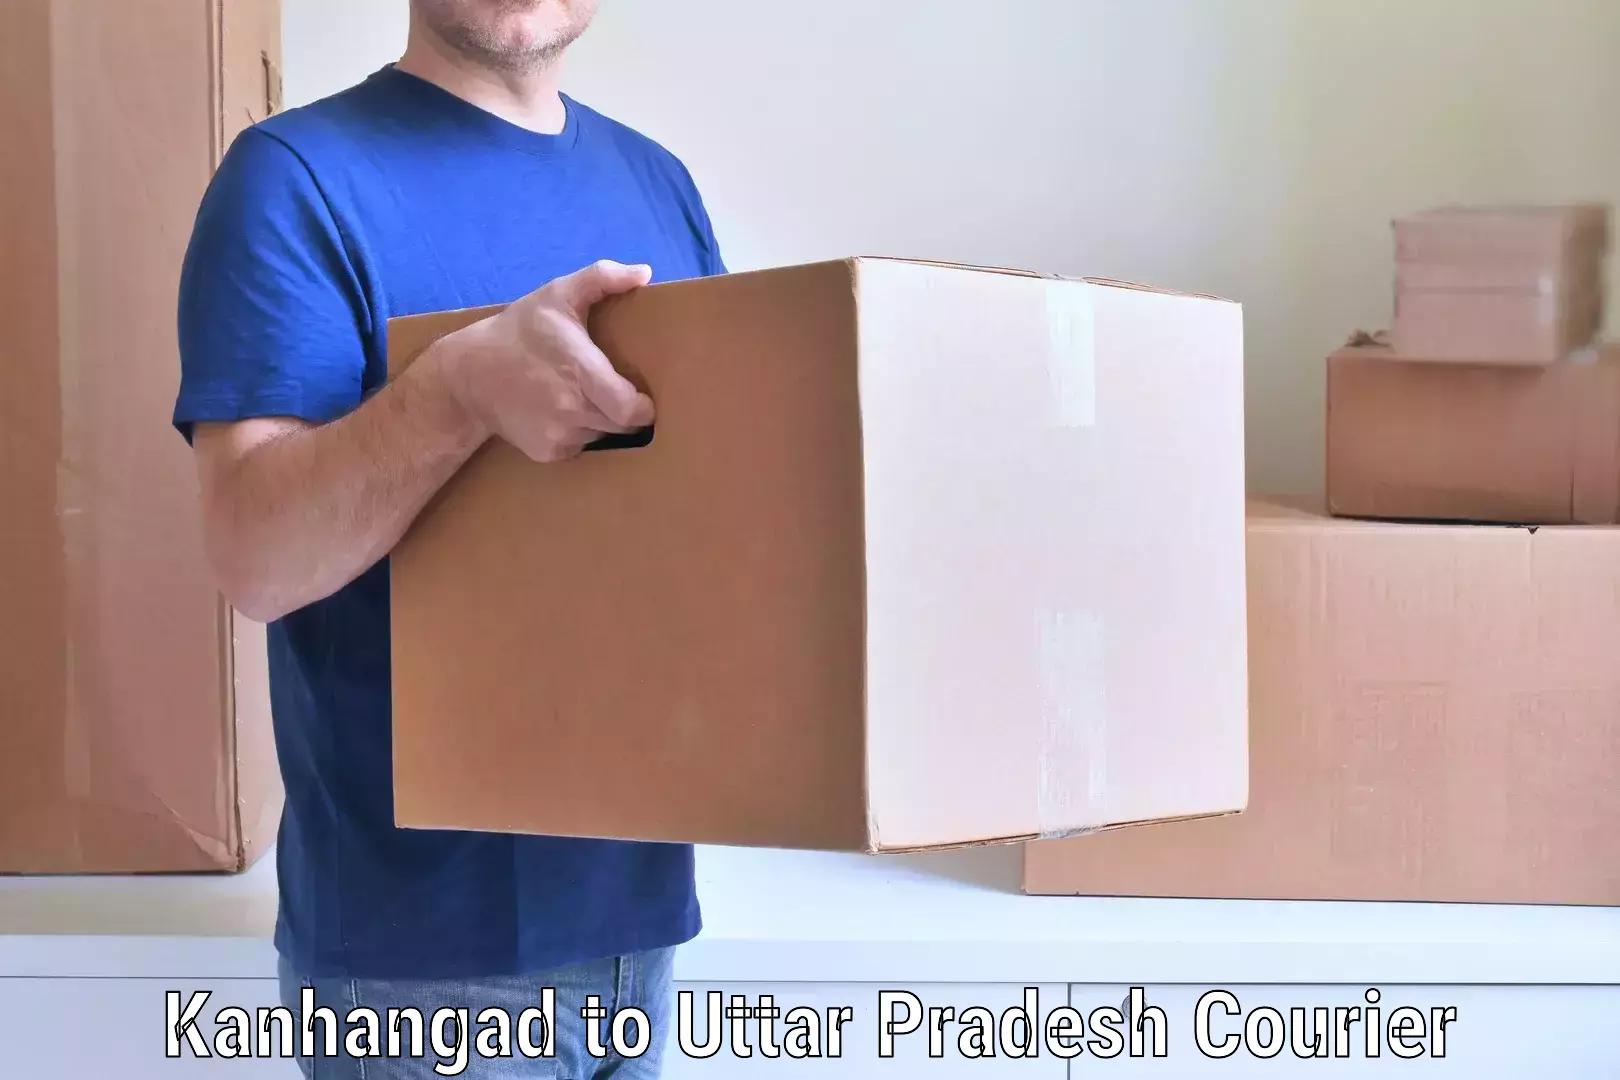 Furniture moving experts Kanhangad to Dhanghata